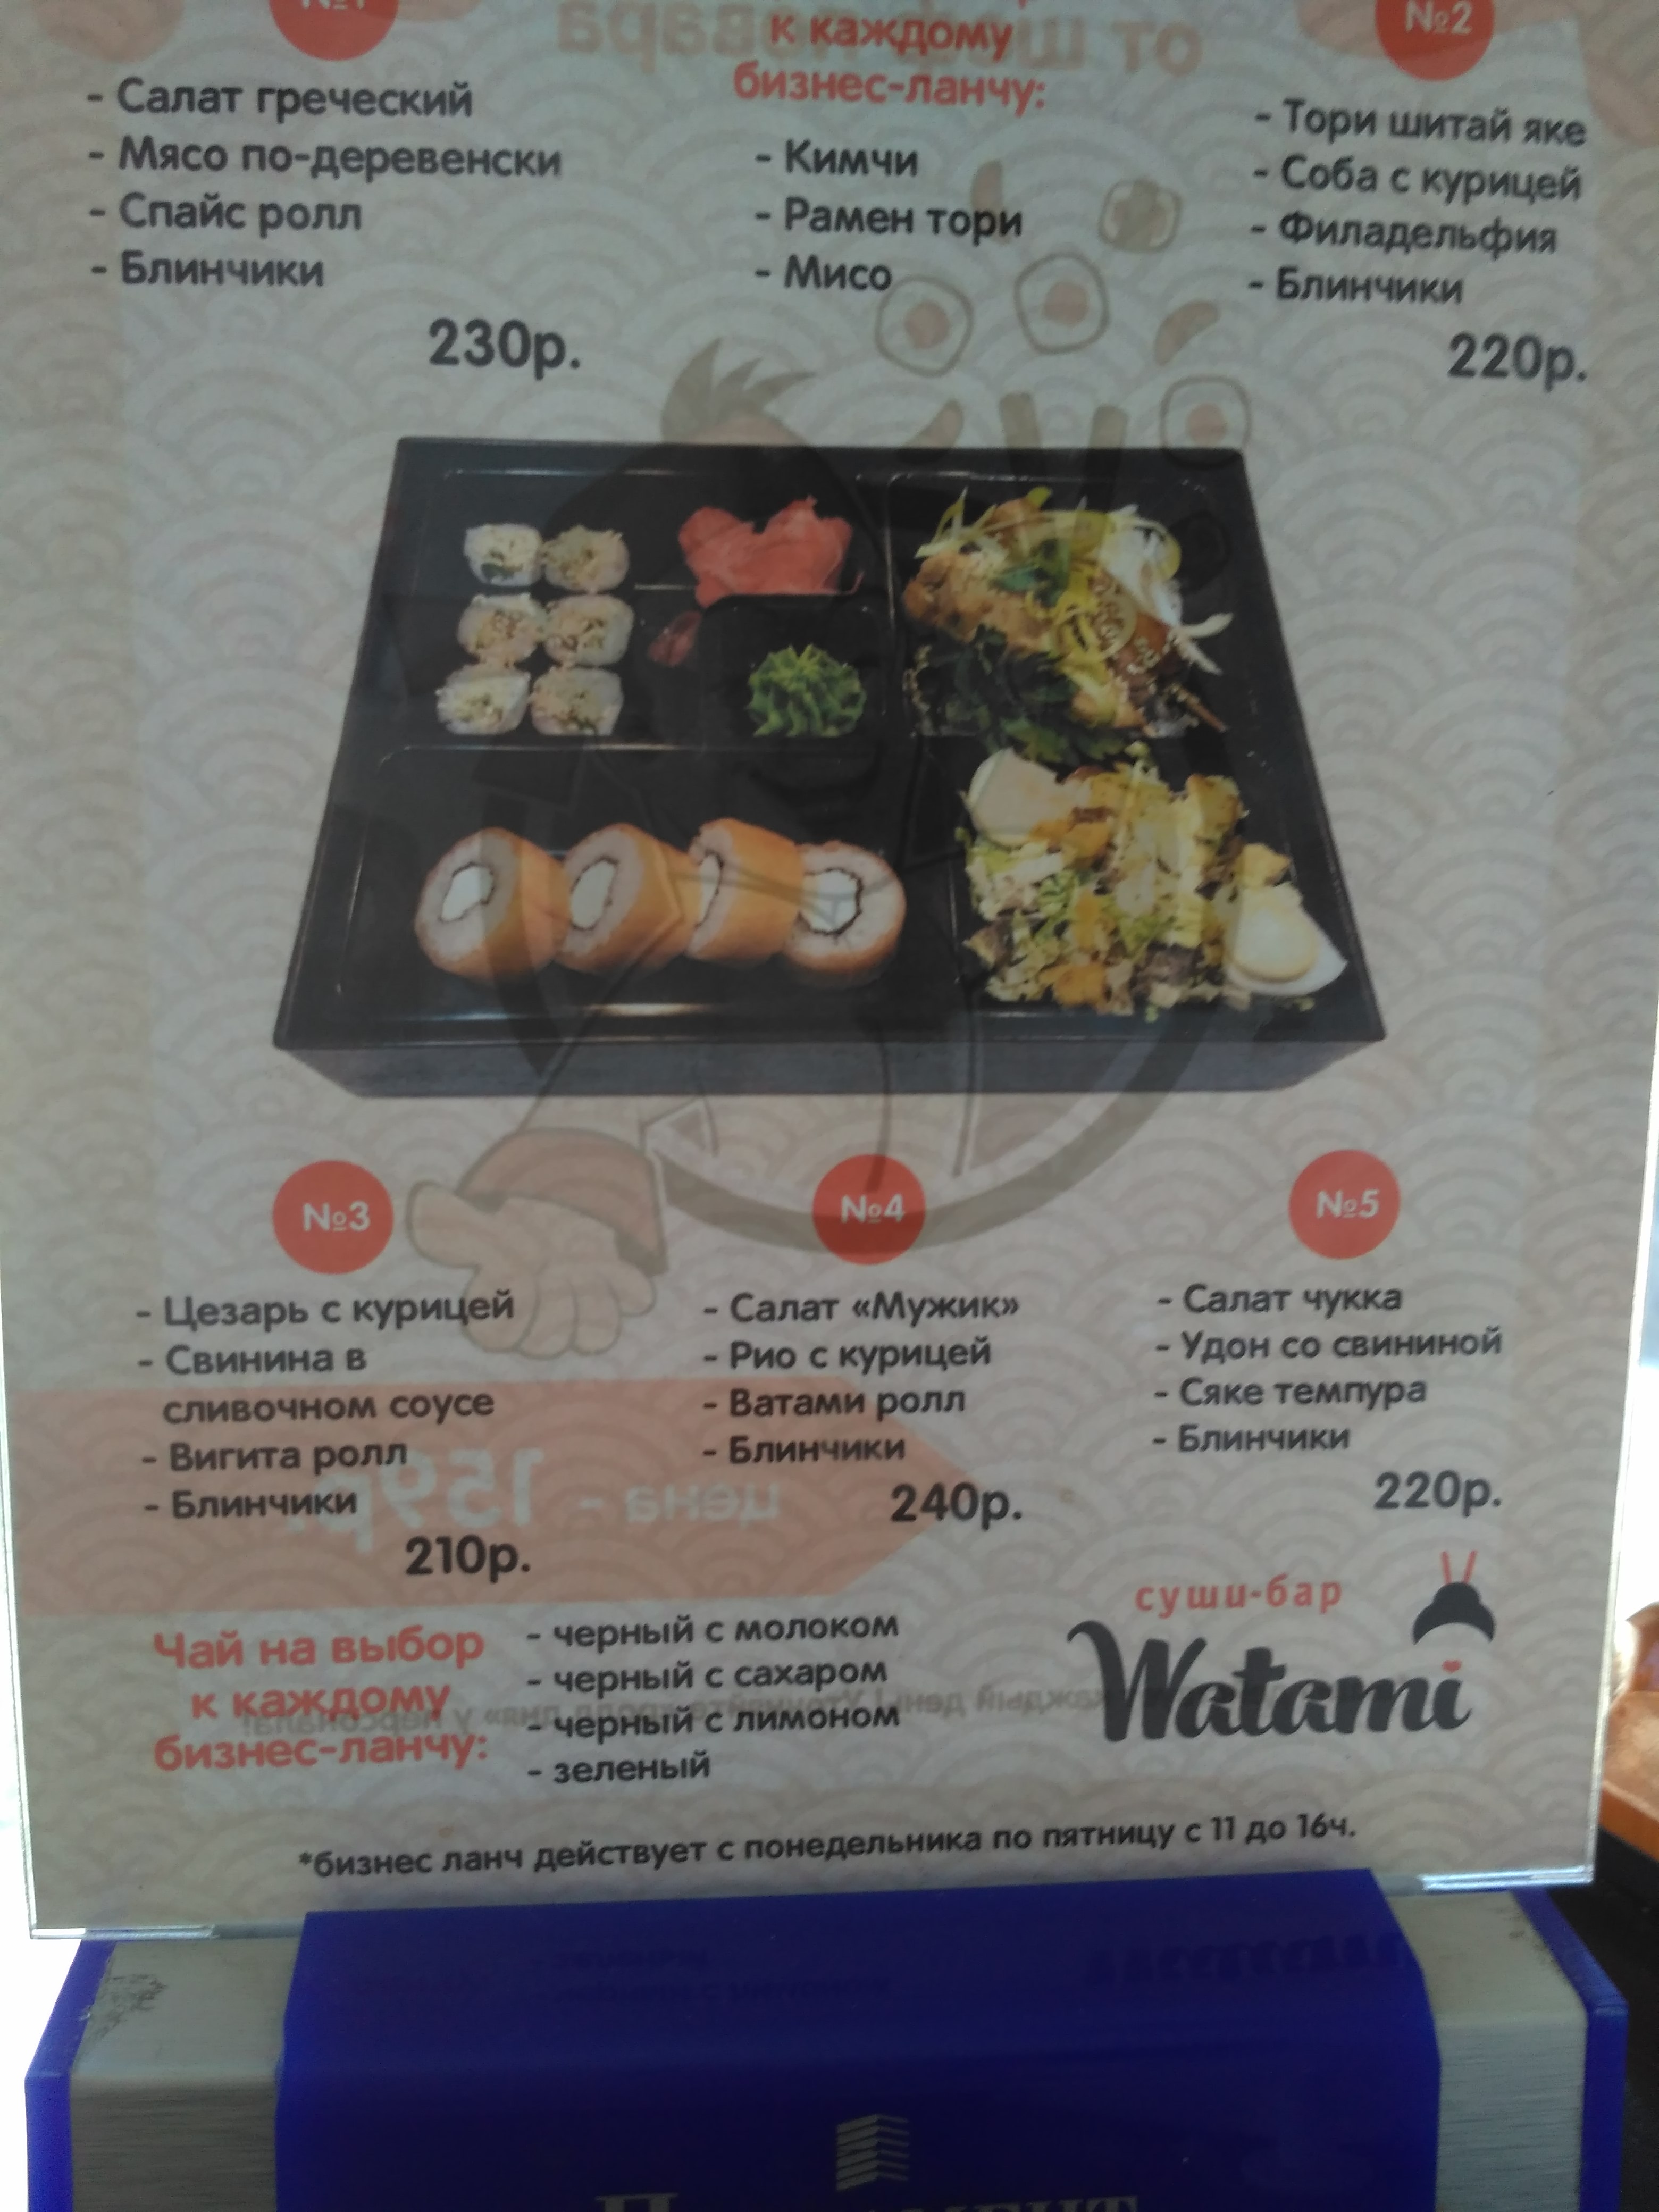 Зебры суши омск бизнес ланч меню фото 16